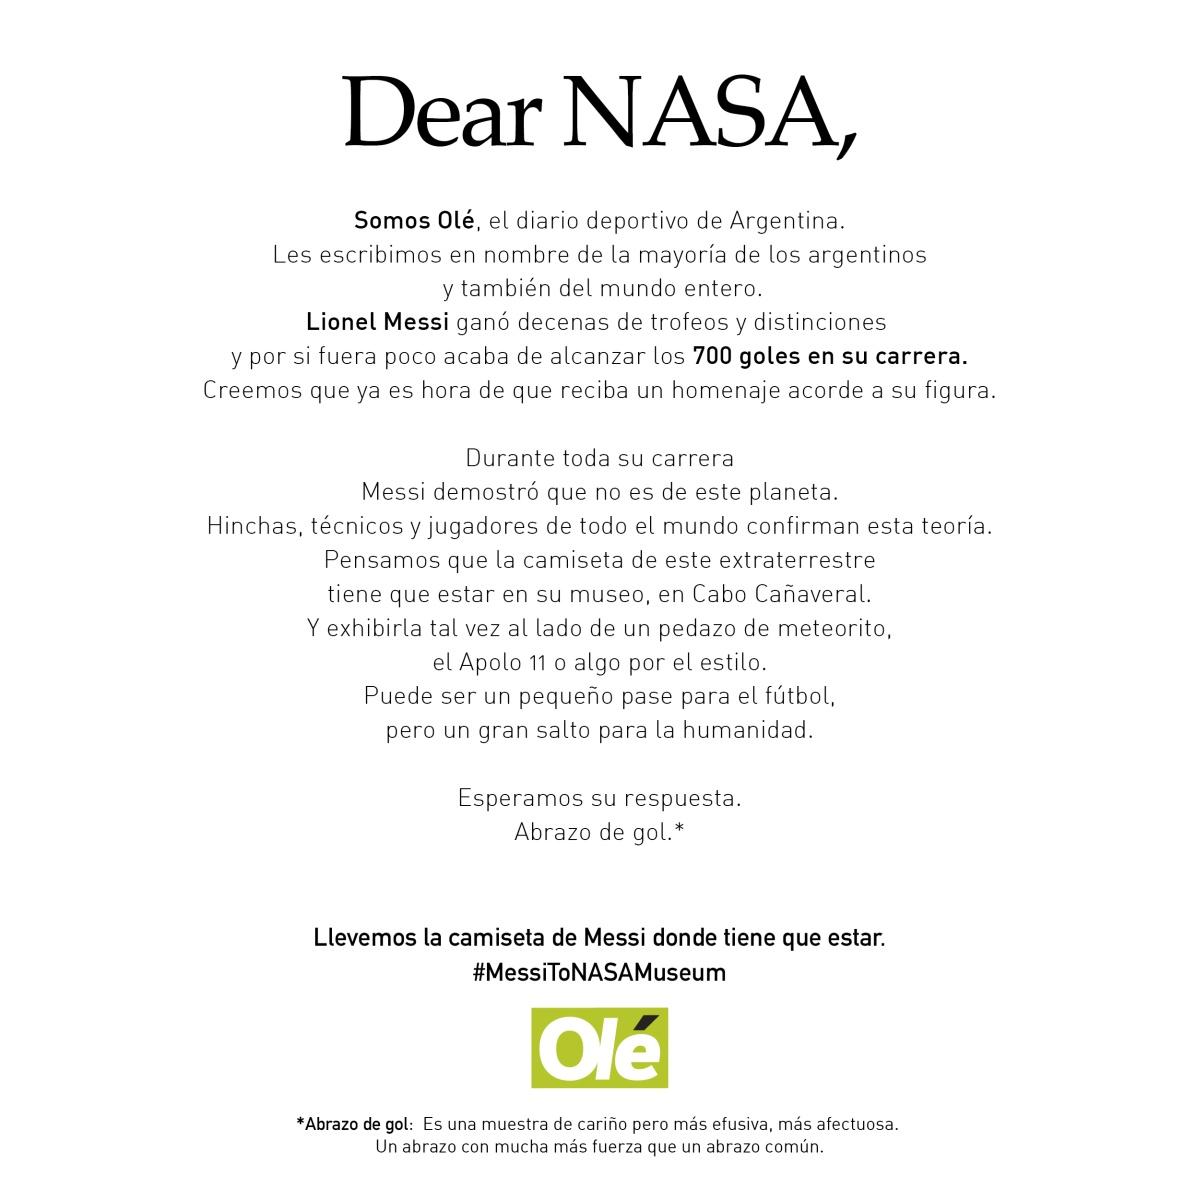 Portada de “Dear NASA”, lo nuevo de VMLY&R para Diario Olé